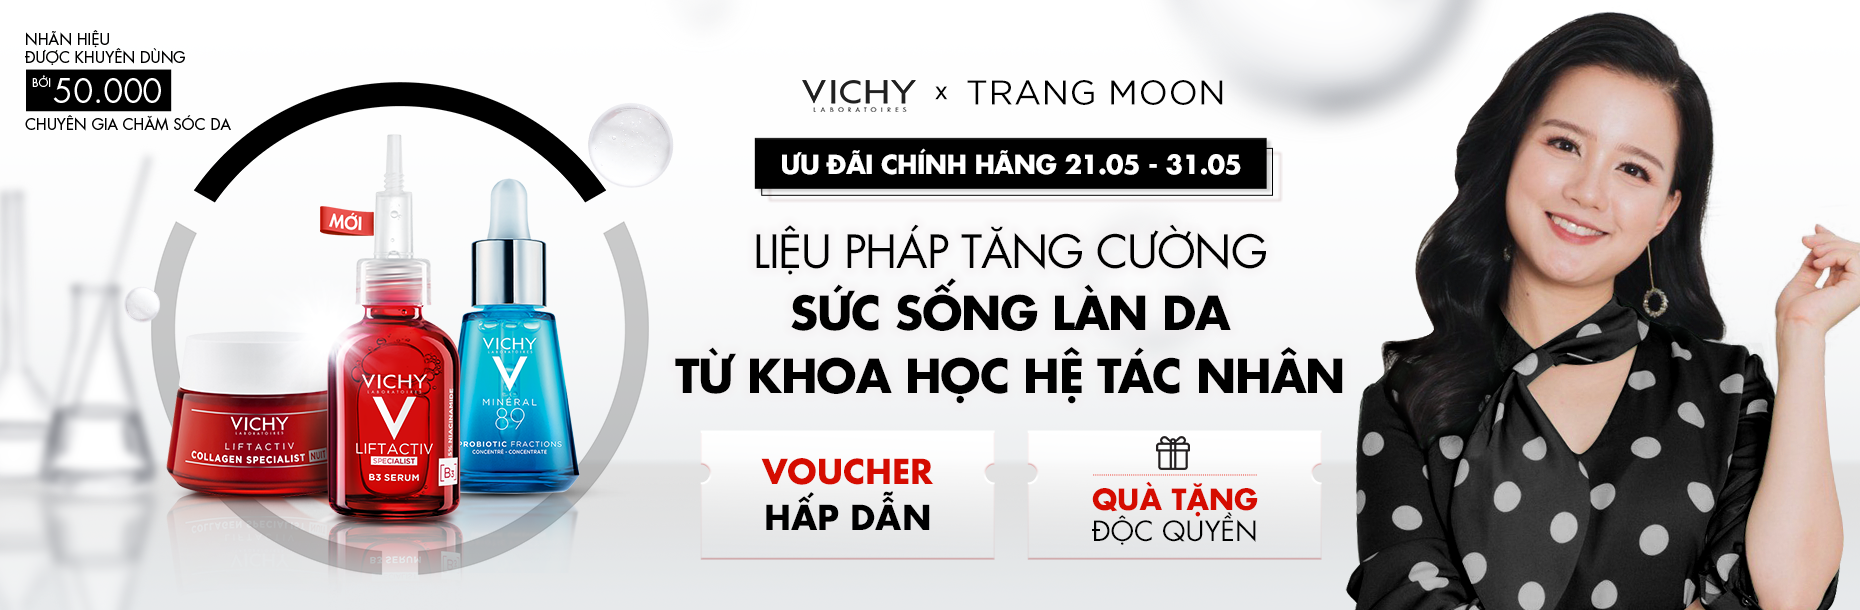 VICHY x TRANG MOON